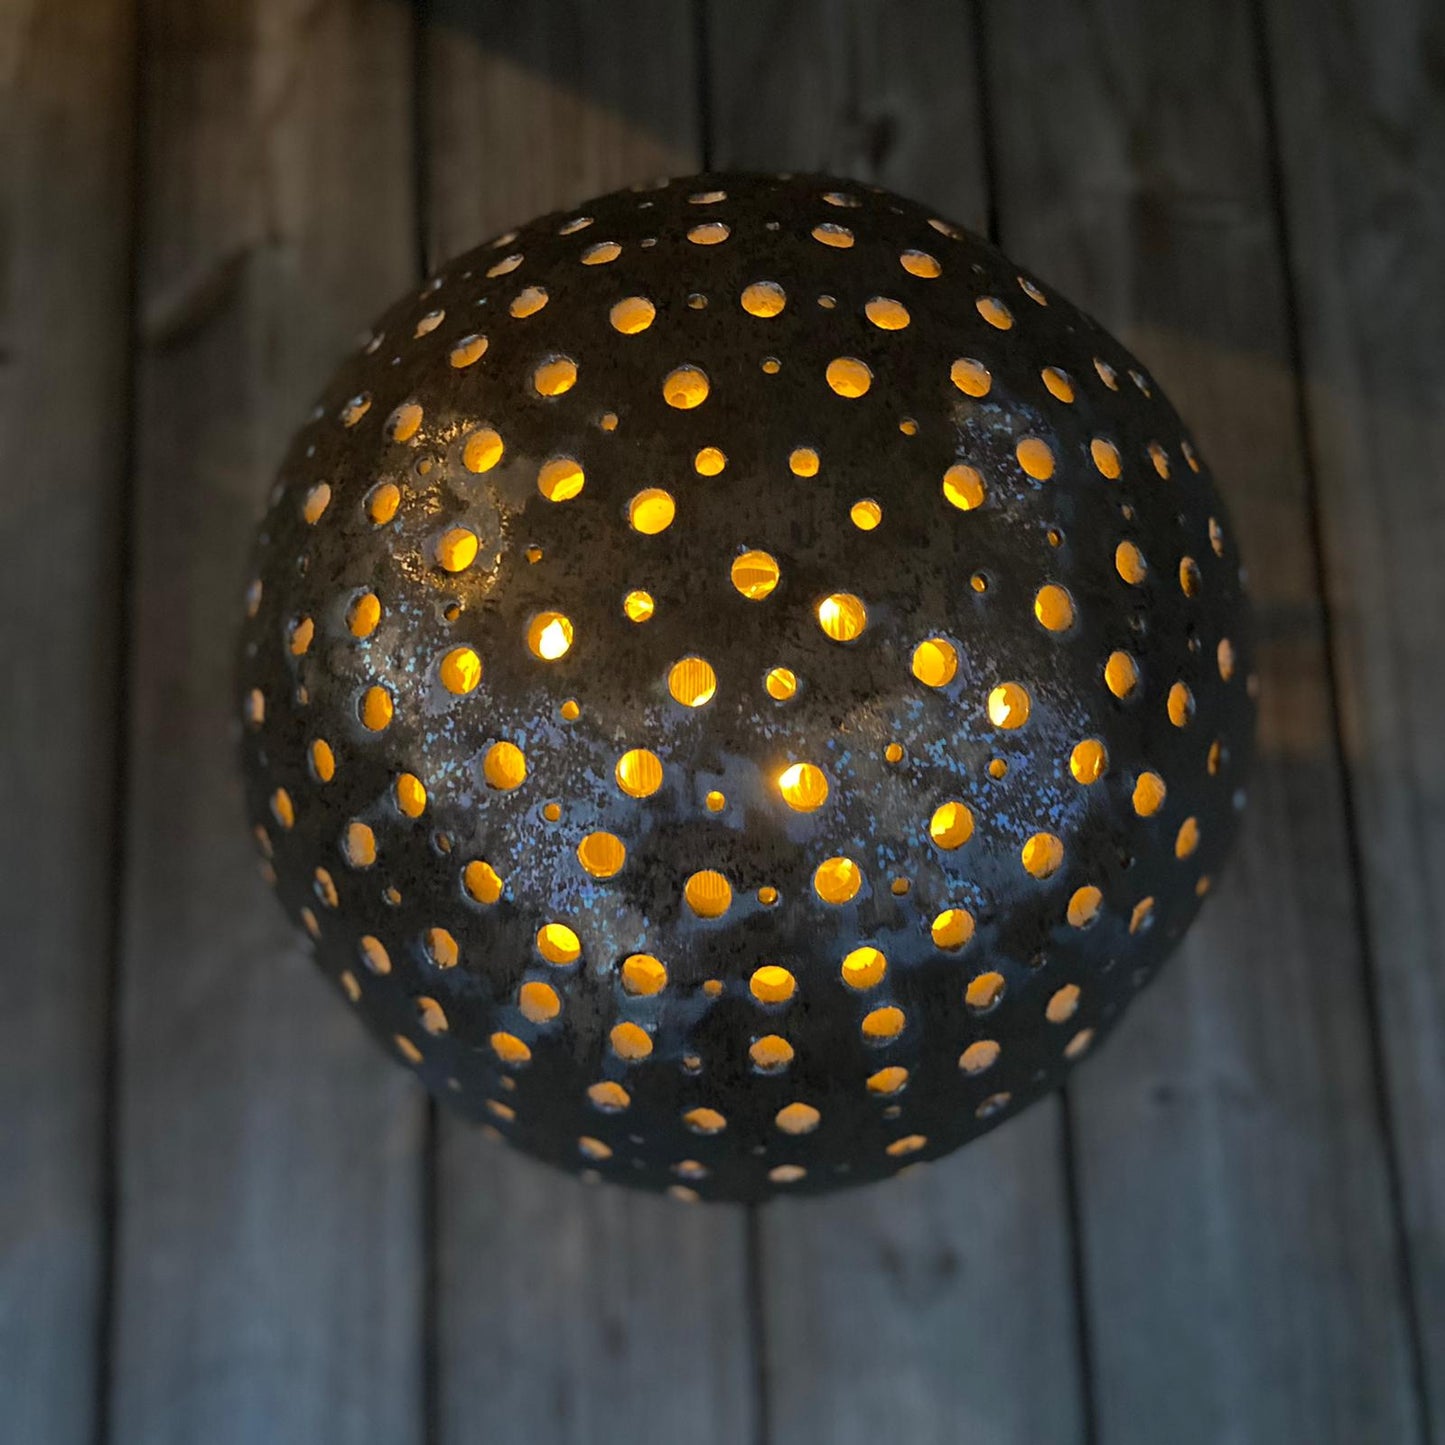 Lichterkugel aus Keramik, Bronzeglasur, Ø ca 40 cm, mit einer Kerze beleuchtet, Ansicht von oben.